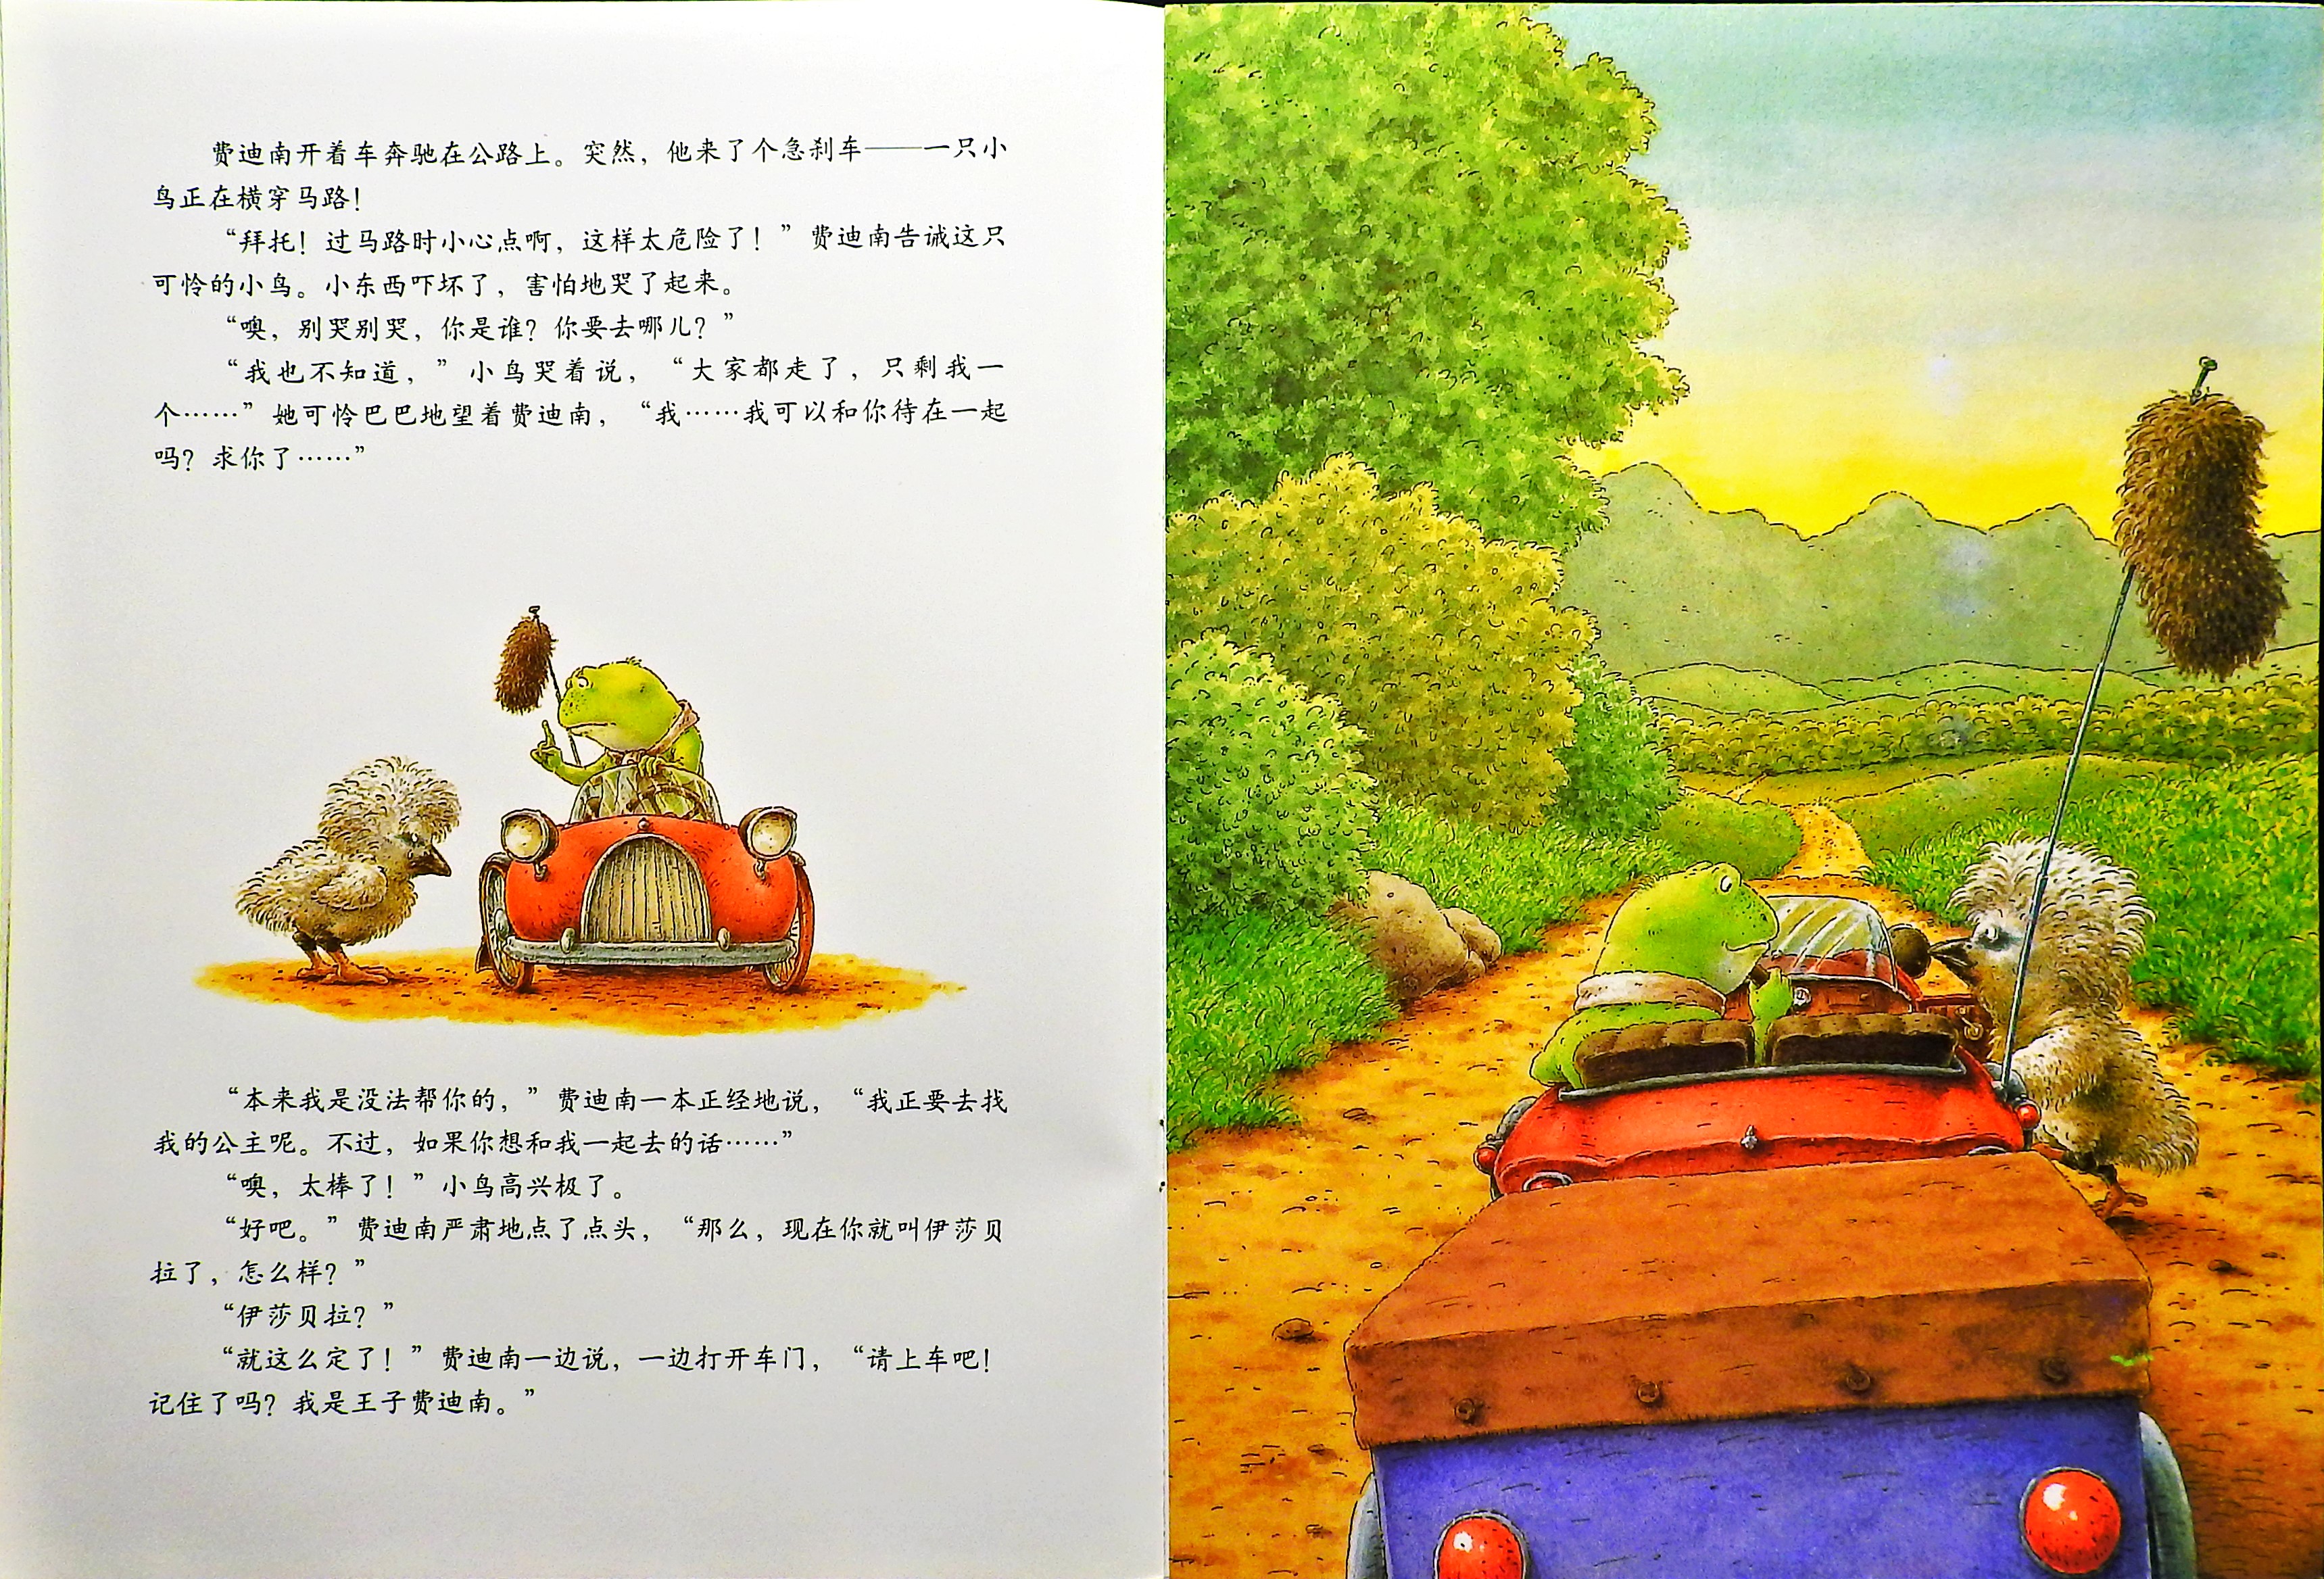 青蛙王子历险记 (07),绘本,绘本故事,绘本阅读,故事书,童书,图画书,课外阅读